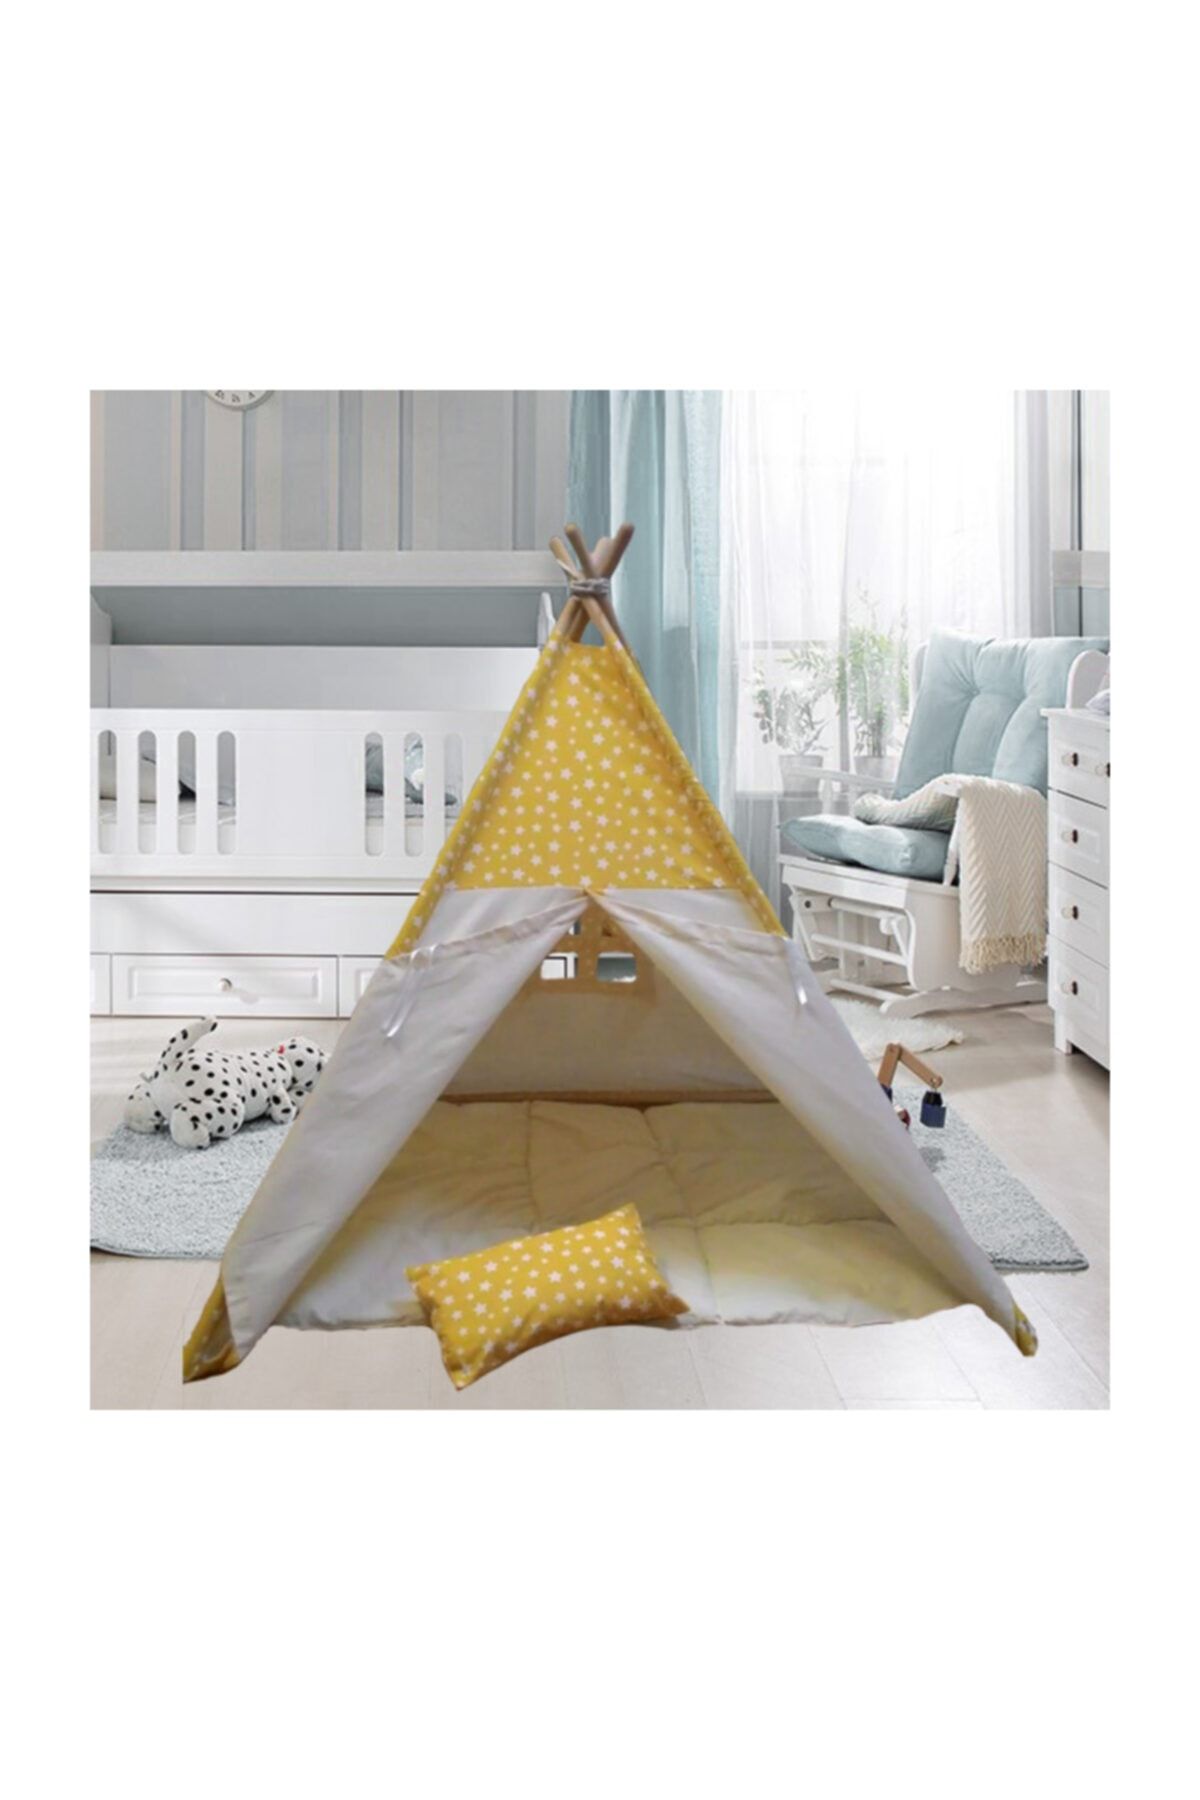 Altev Sarı Yıldız Ahşap Çocuk Çadırı Kızılderili Çadırı Oyun Evi Oyun Çadırı Kamp Çadırı Rüya Ev